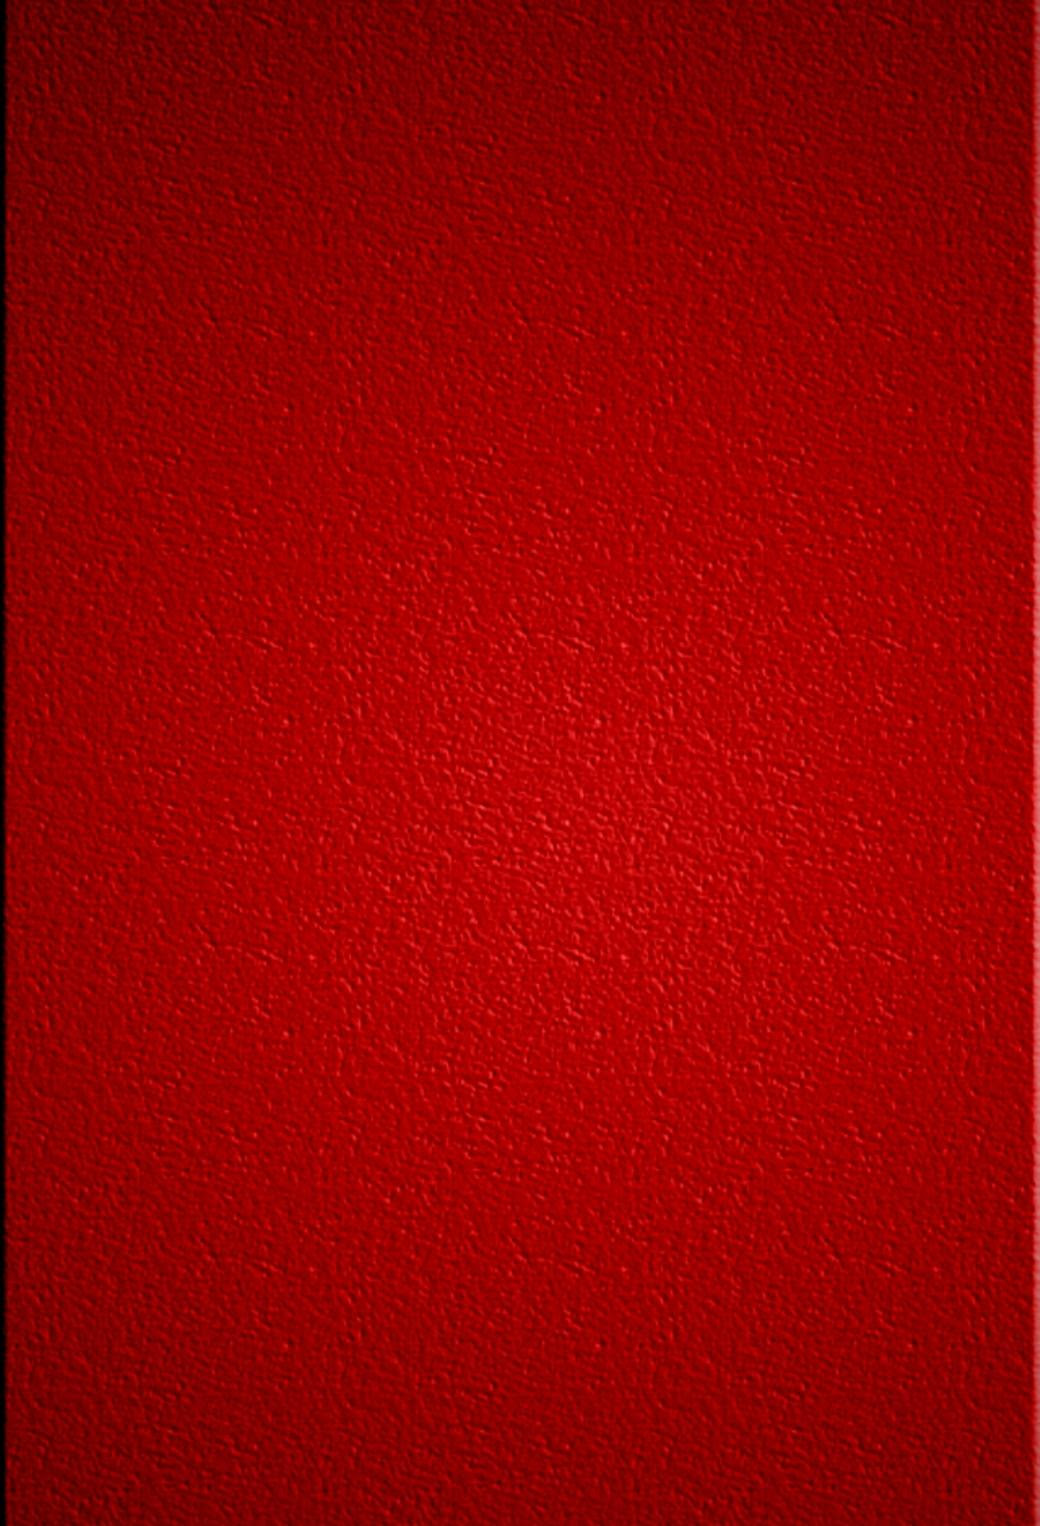 ディズニー画像ランド 最新のhd赤 Iphone 壁紙